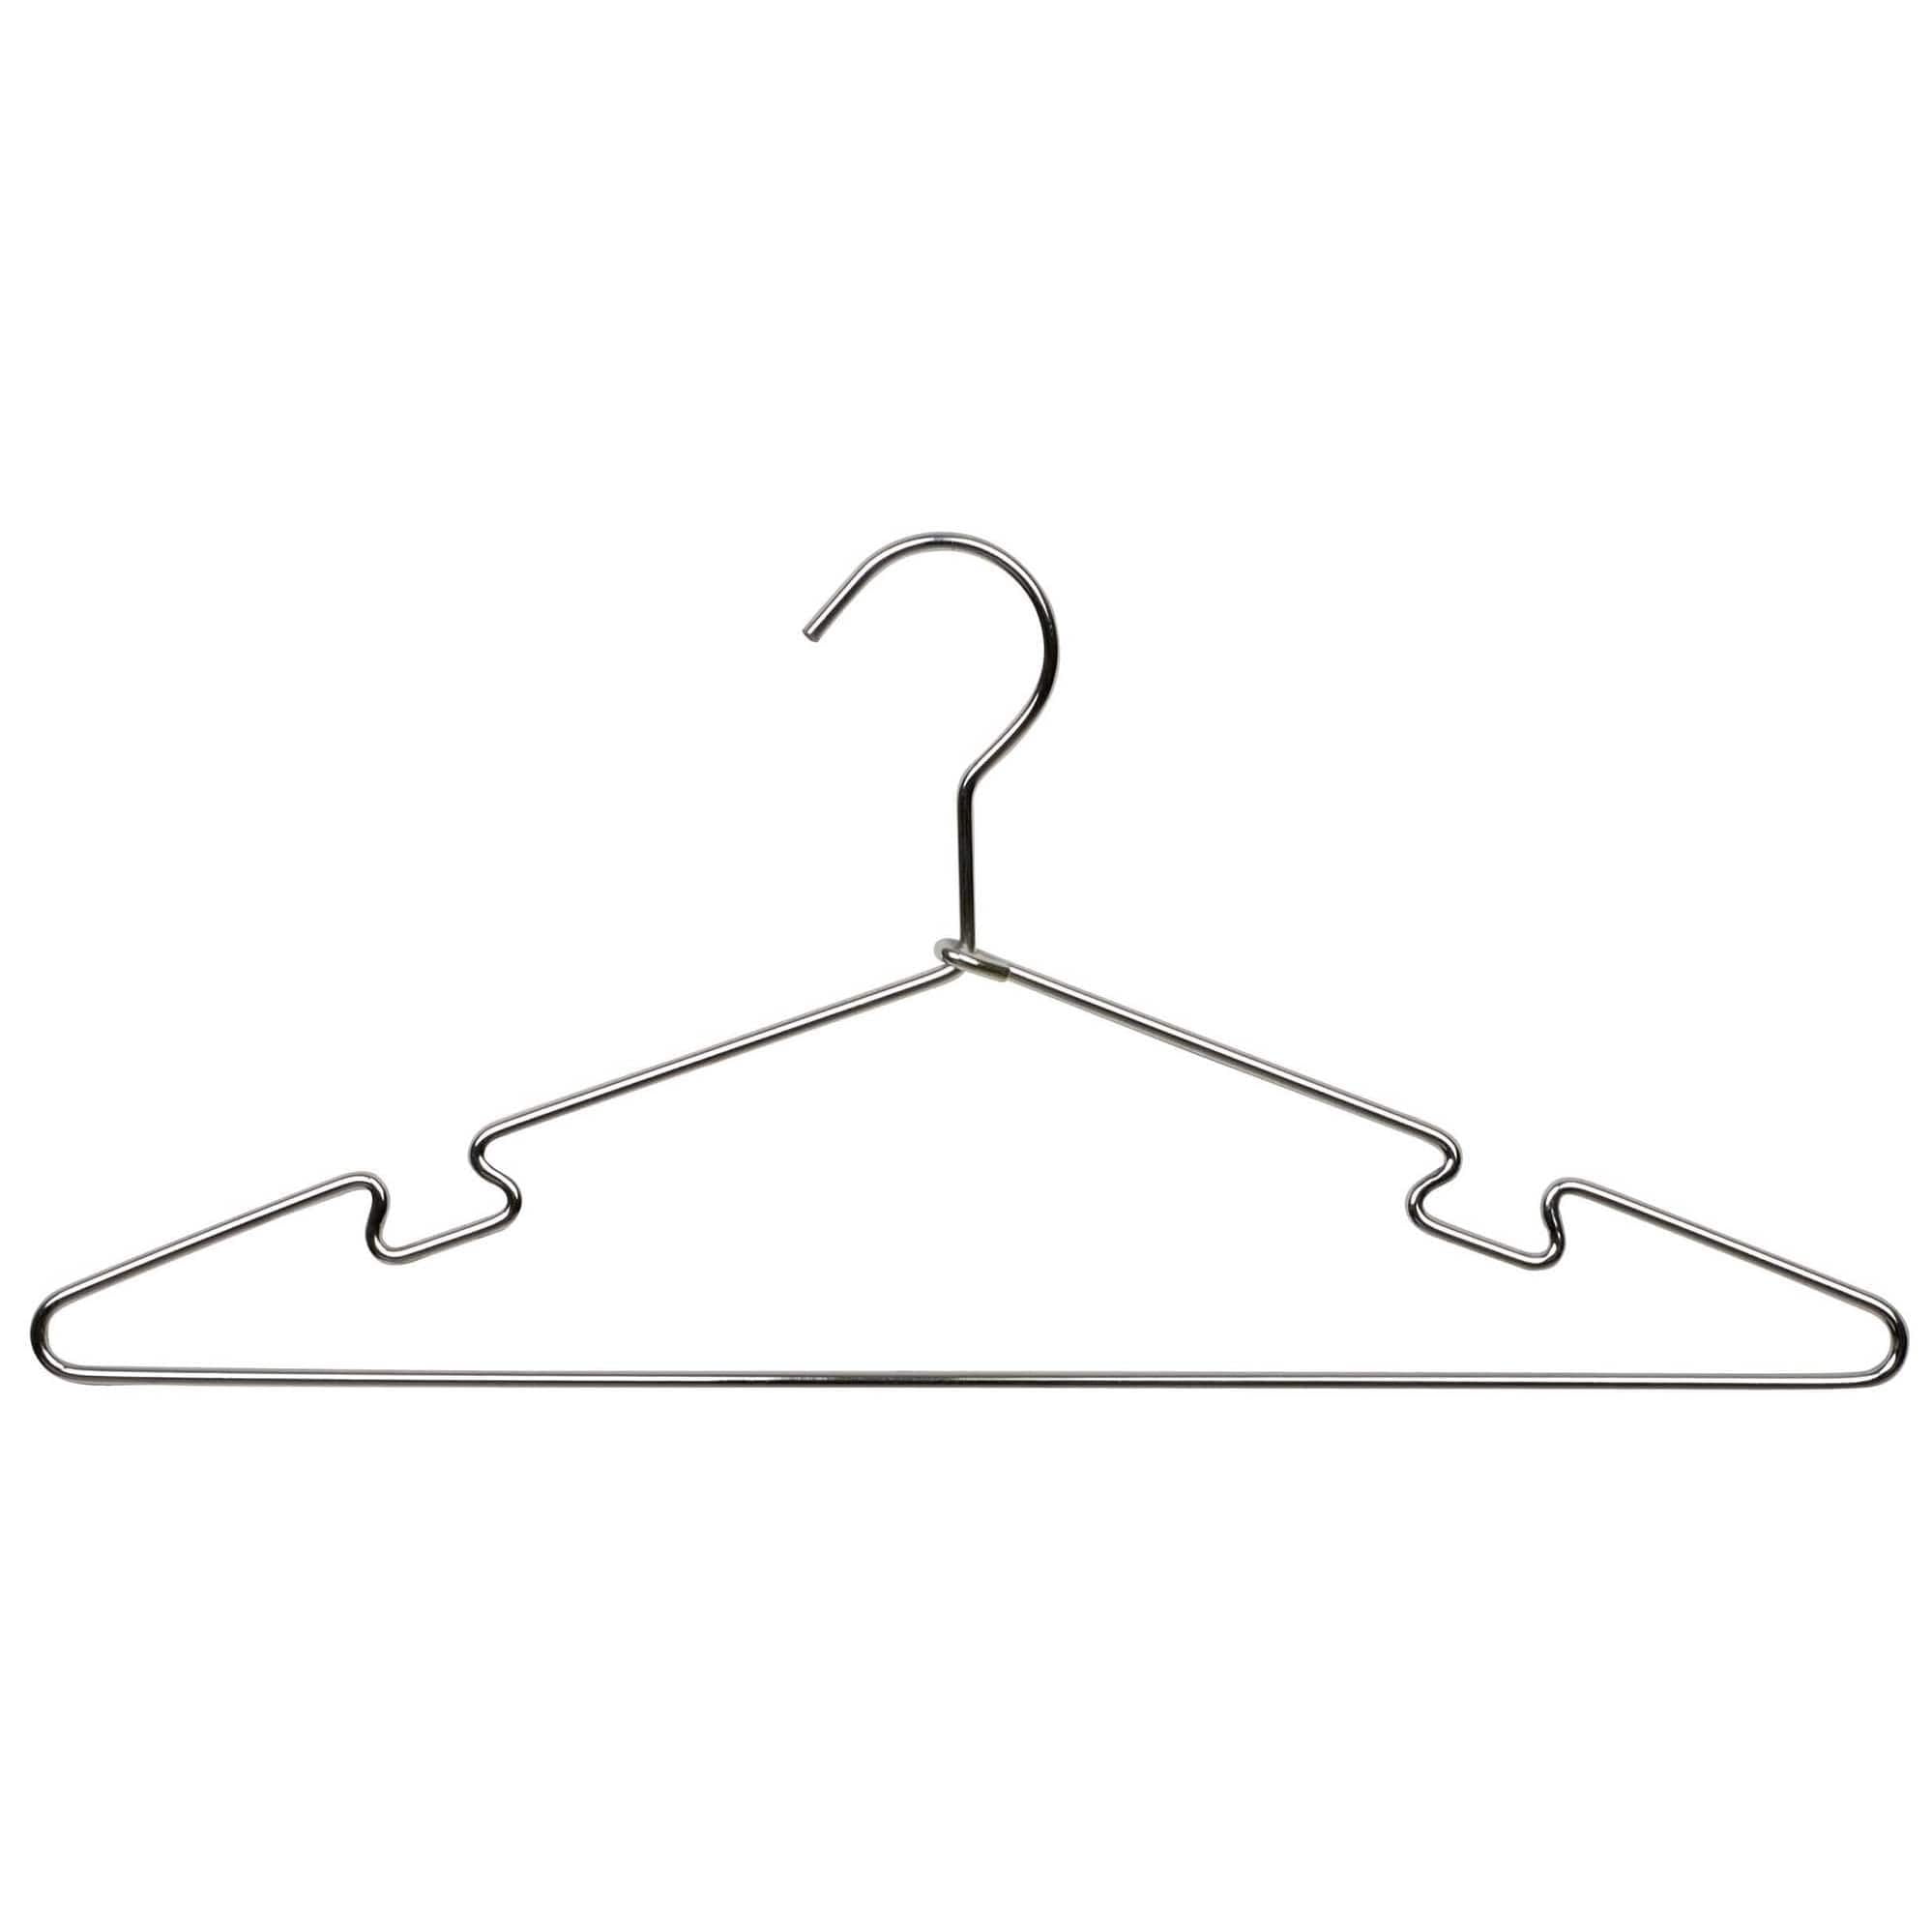 Fayleeko Wire Hangers 17.7 Inch Coat Hangers Strong Heavy Duty